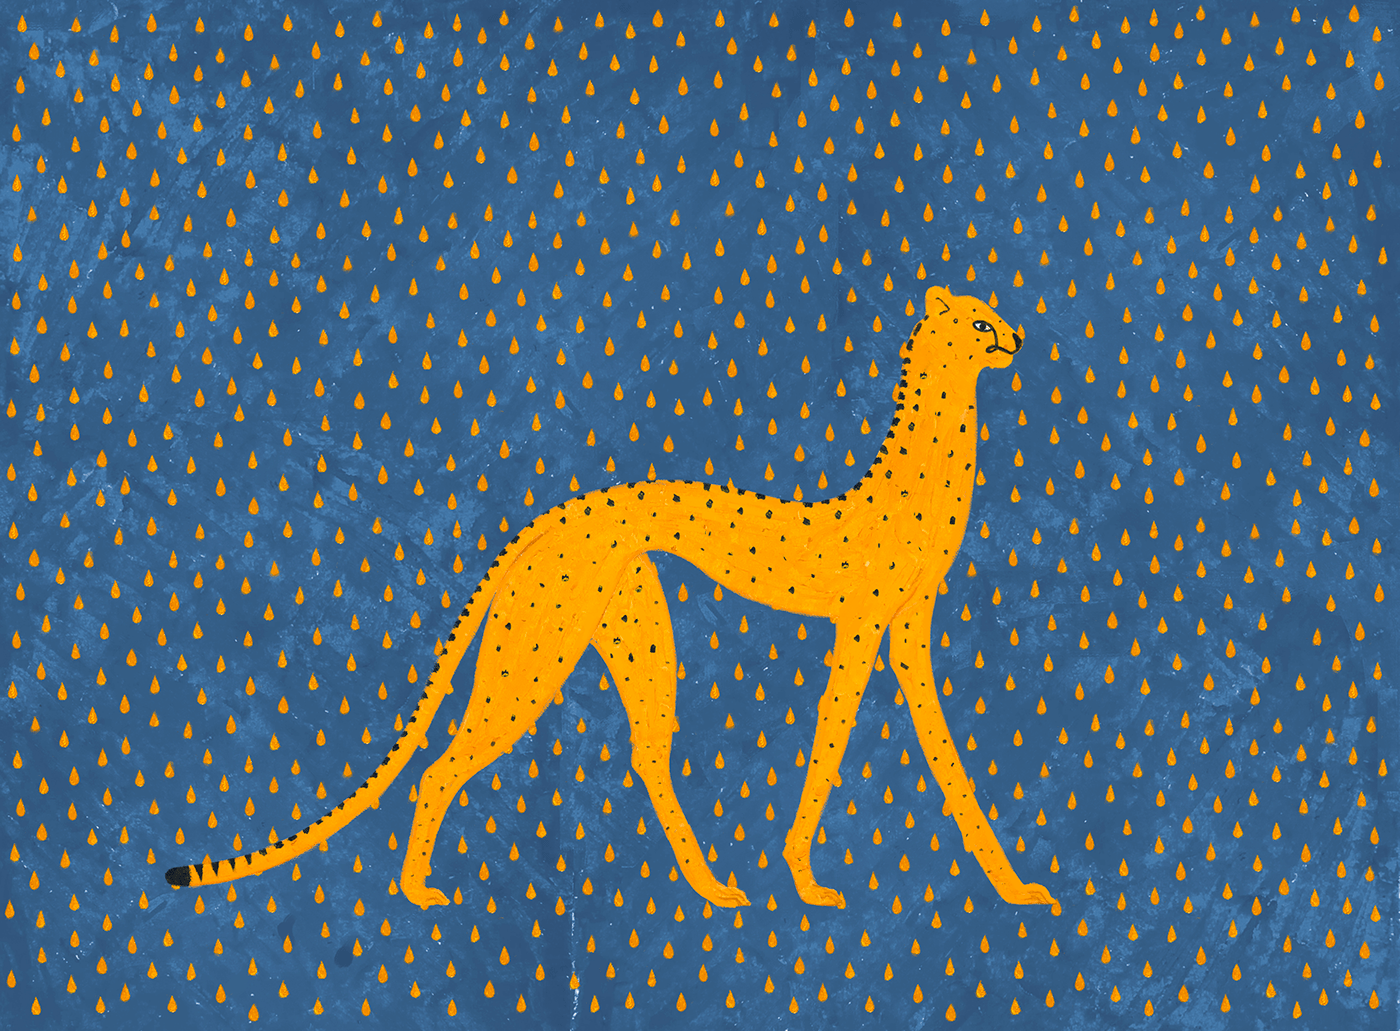 Cheetah under a golden rain.